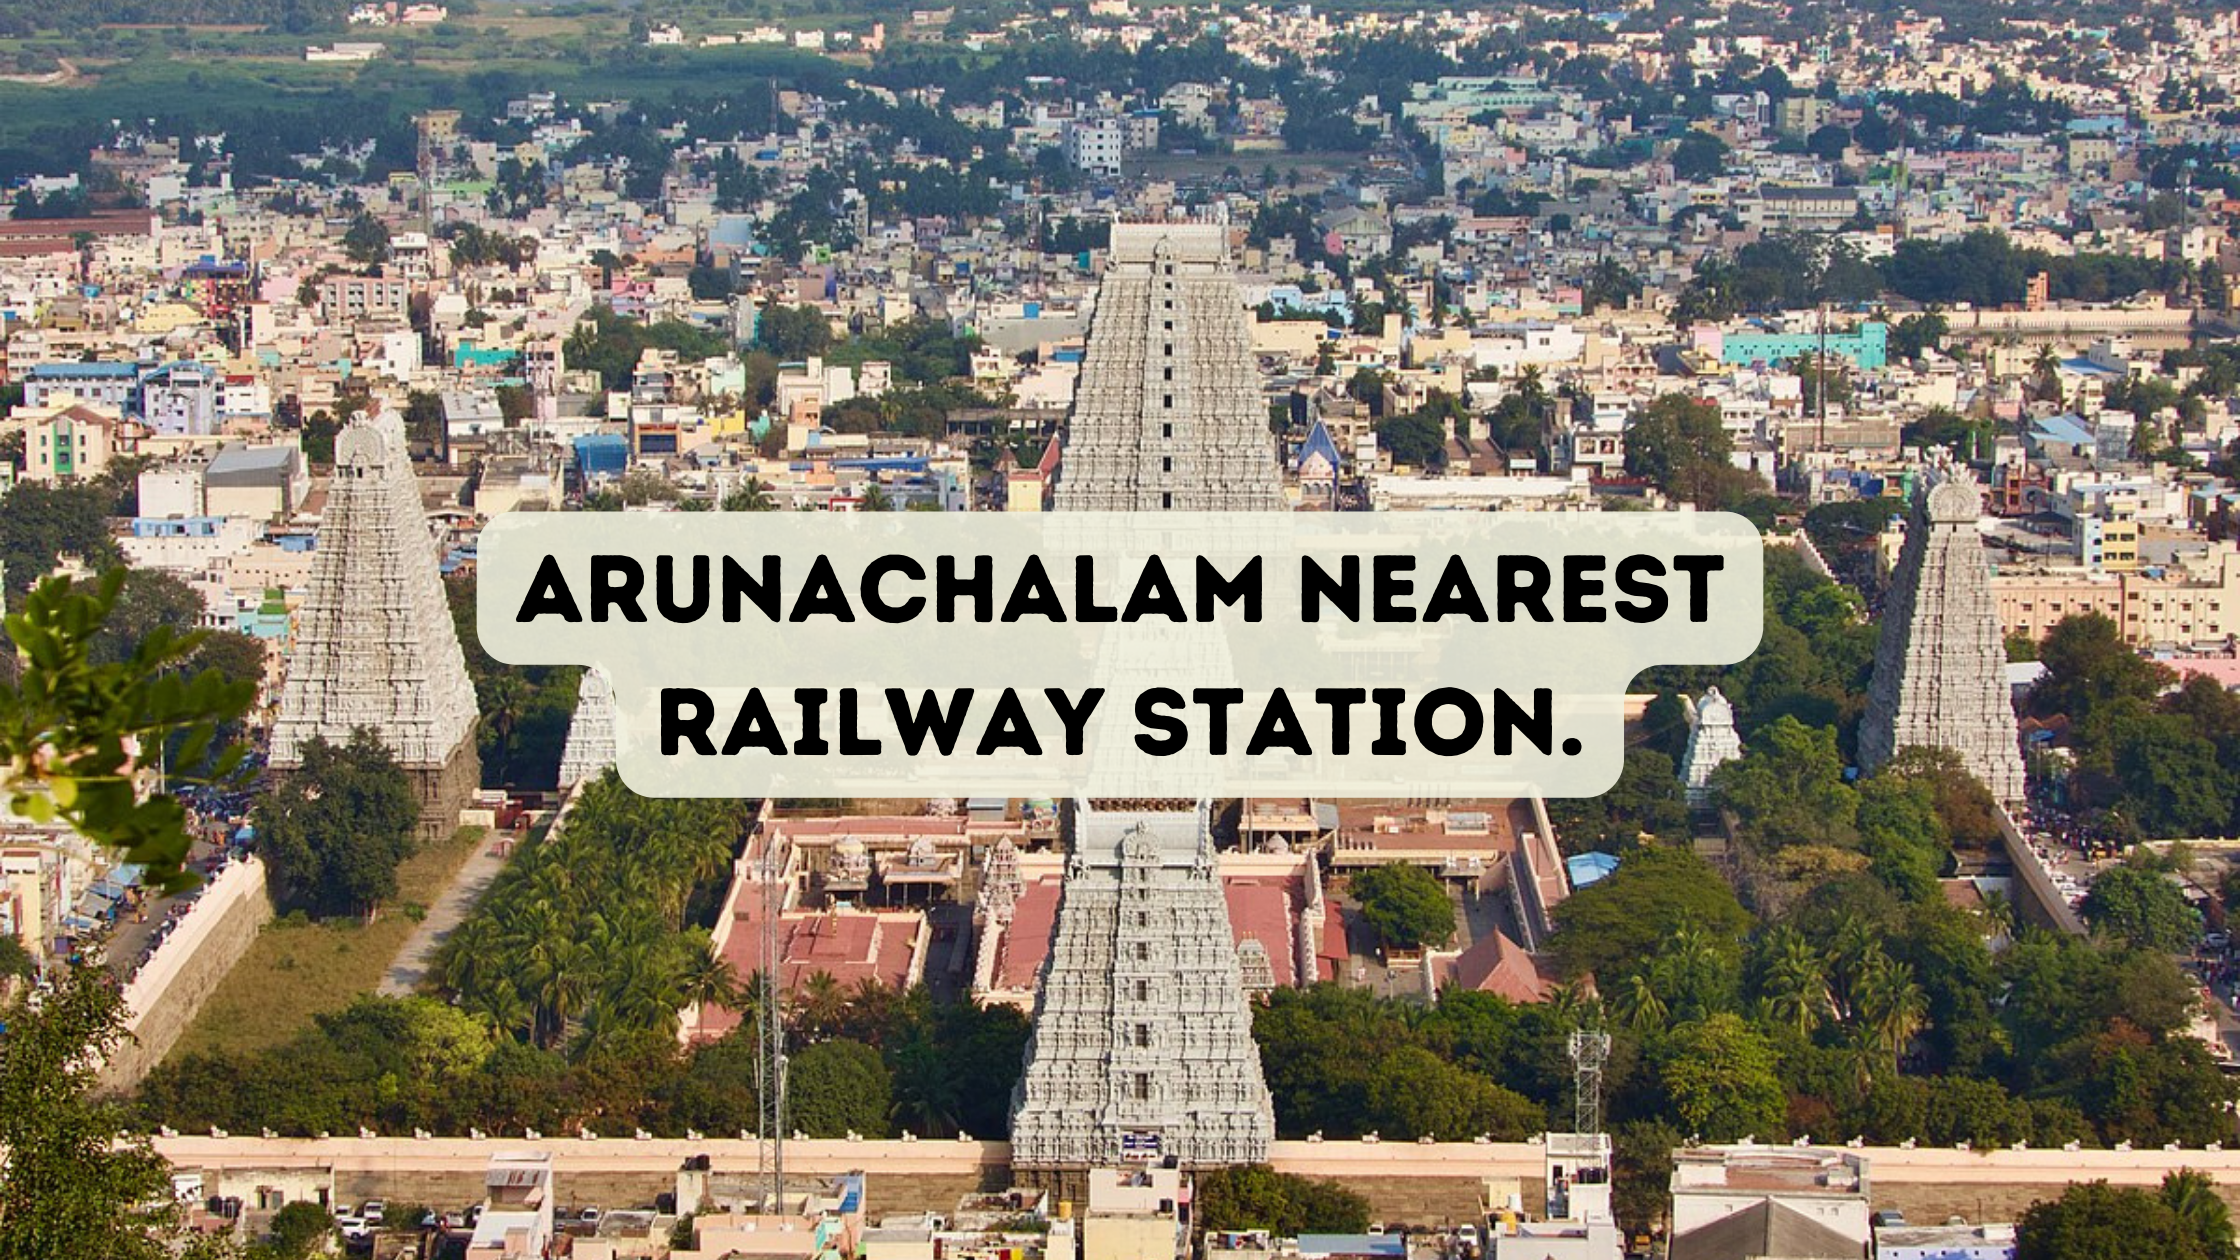 Arunachalam Nearest Railway Station